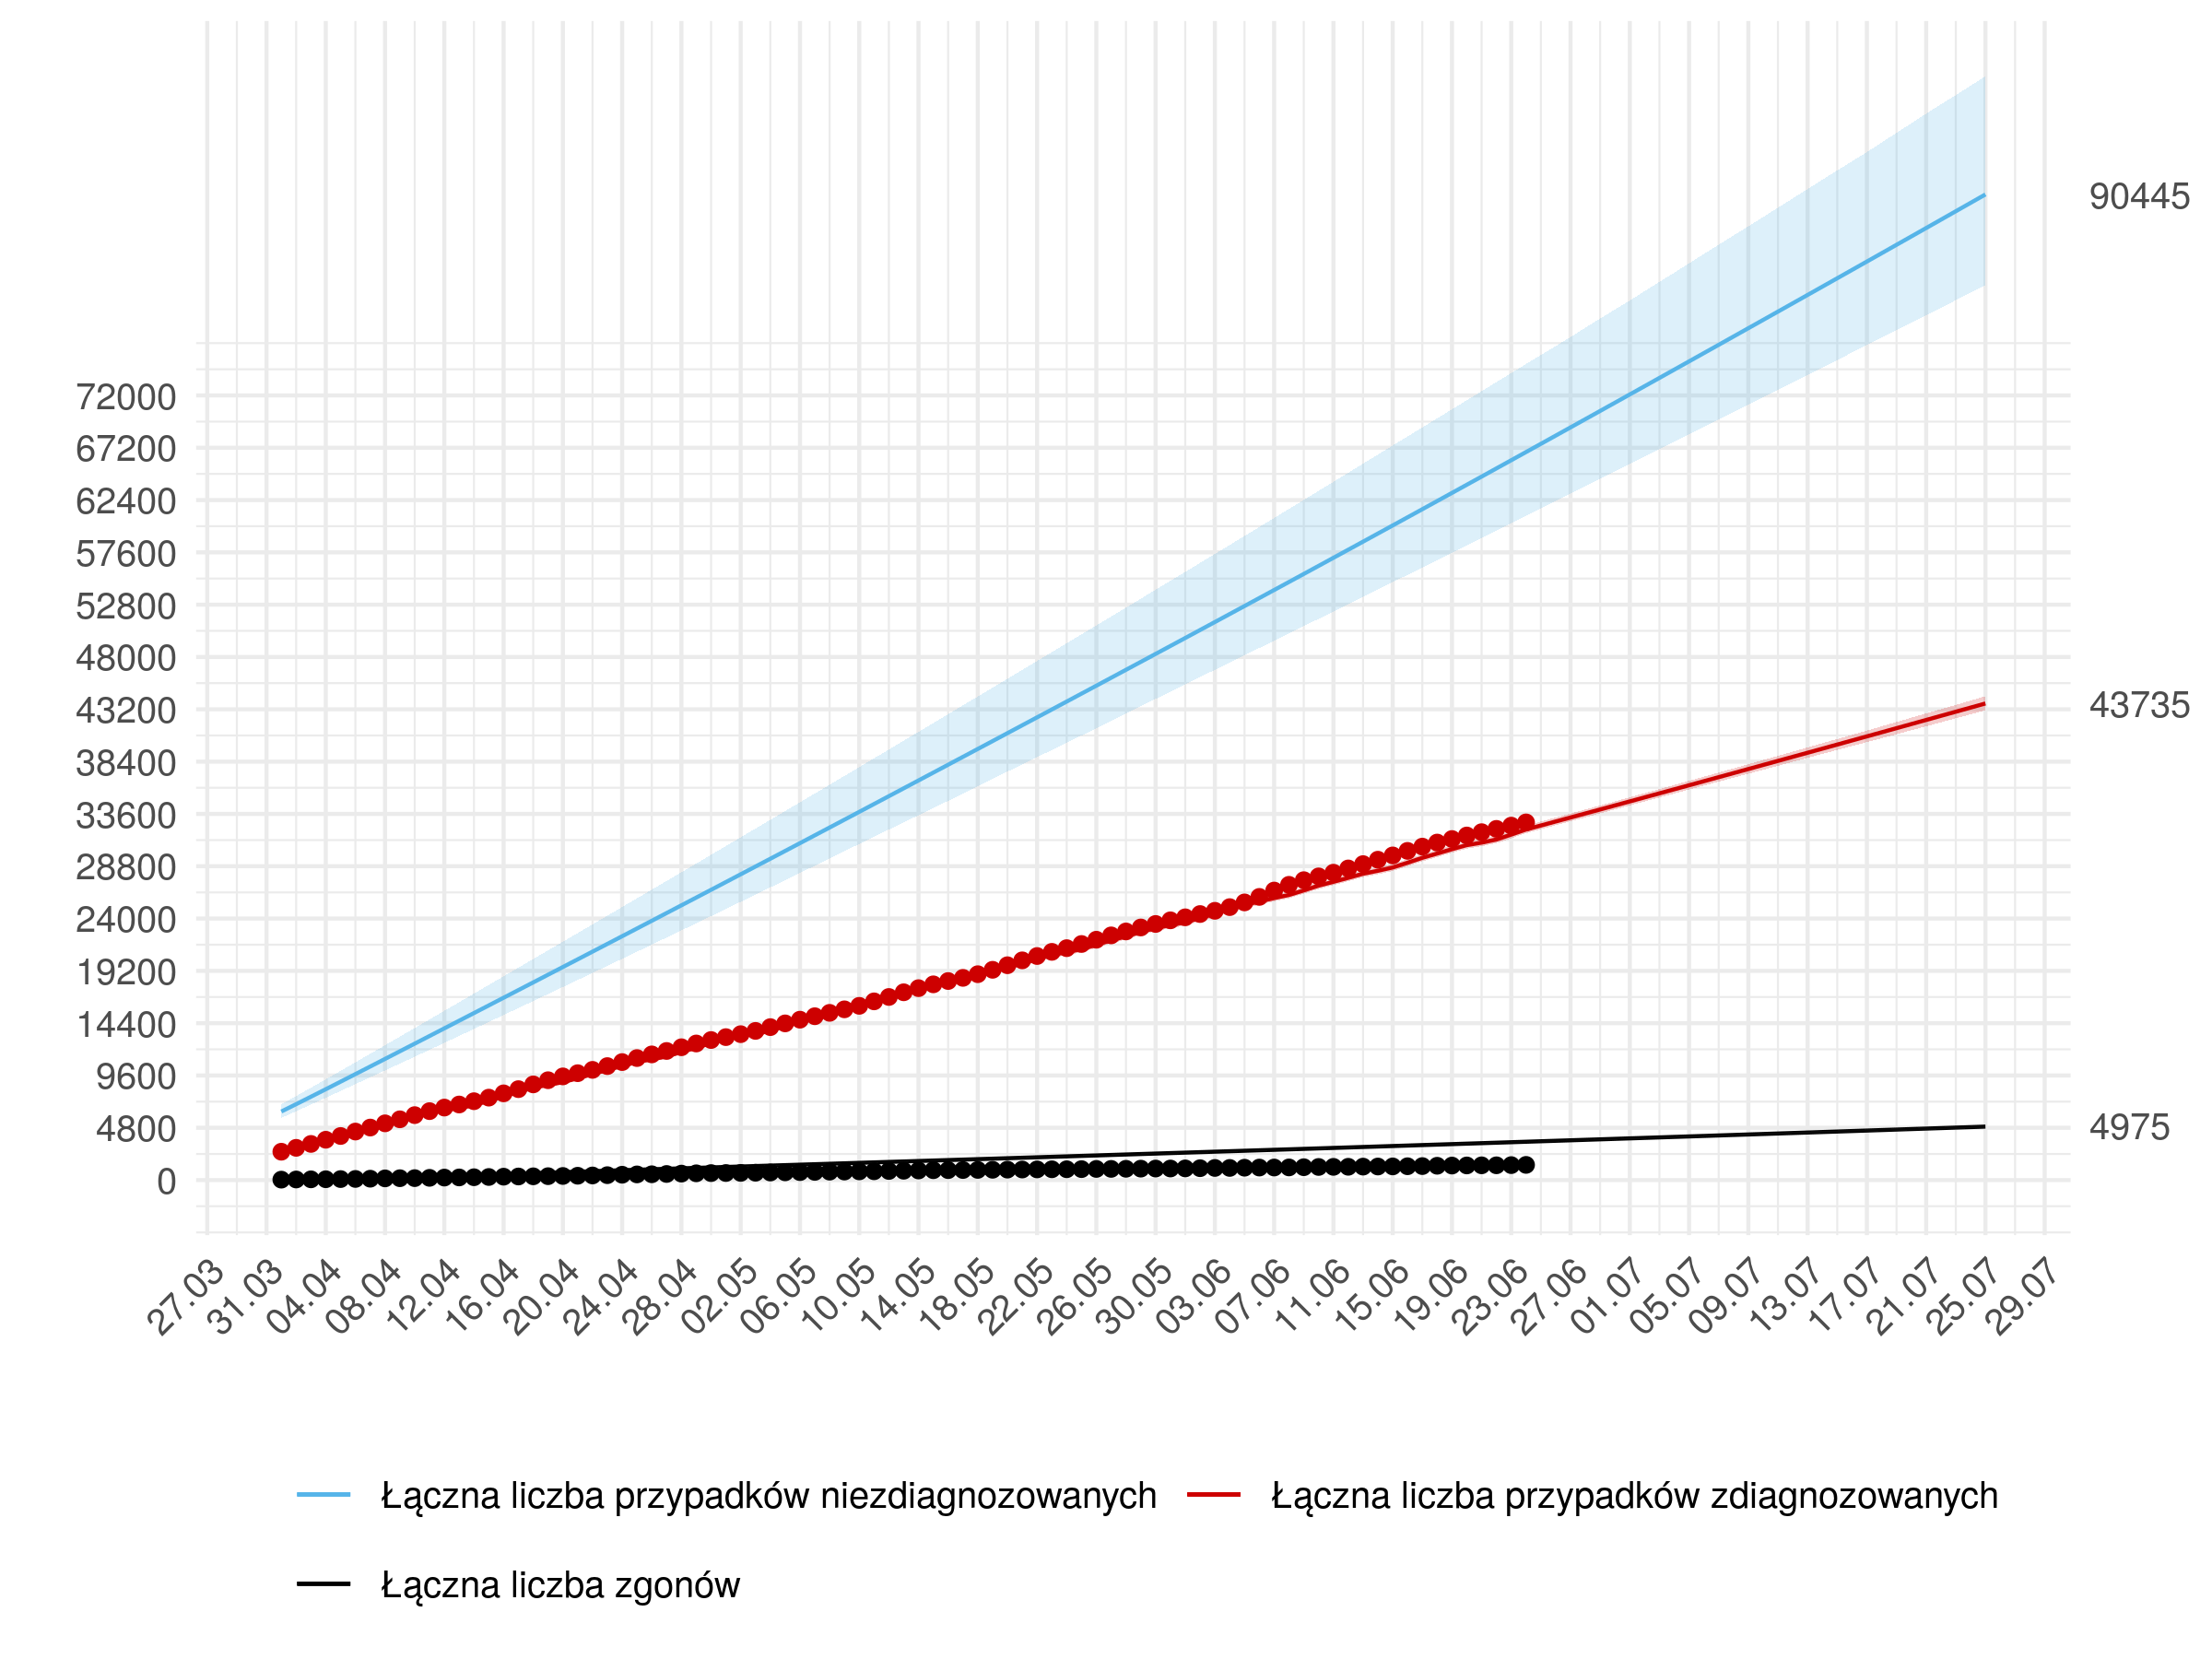 Średnioterminowa prognoza łącznej liczby rozpoznań zdiagnozowanych (czerwona linia) i niezdiagnozowanych (niebieska) w modelu stochastycznym. W dniach 25 czerwca - 25 lipca przyjęto wzrost liczby testów opisany w Appendix 4. Na dzień 25 lipca przewidujemy 43 735  z 95% przedziałem ufności (43105 - 44400).